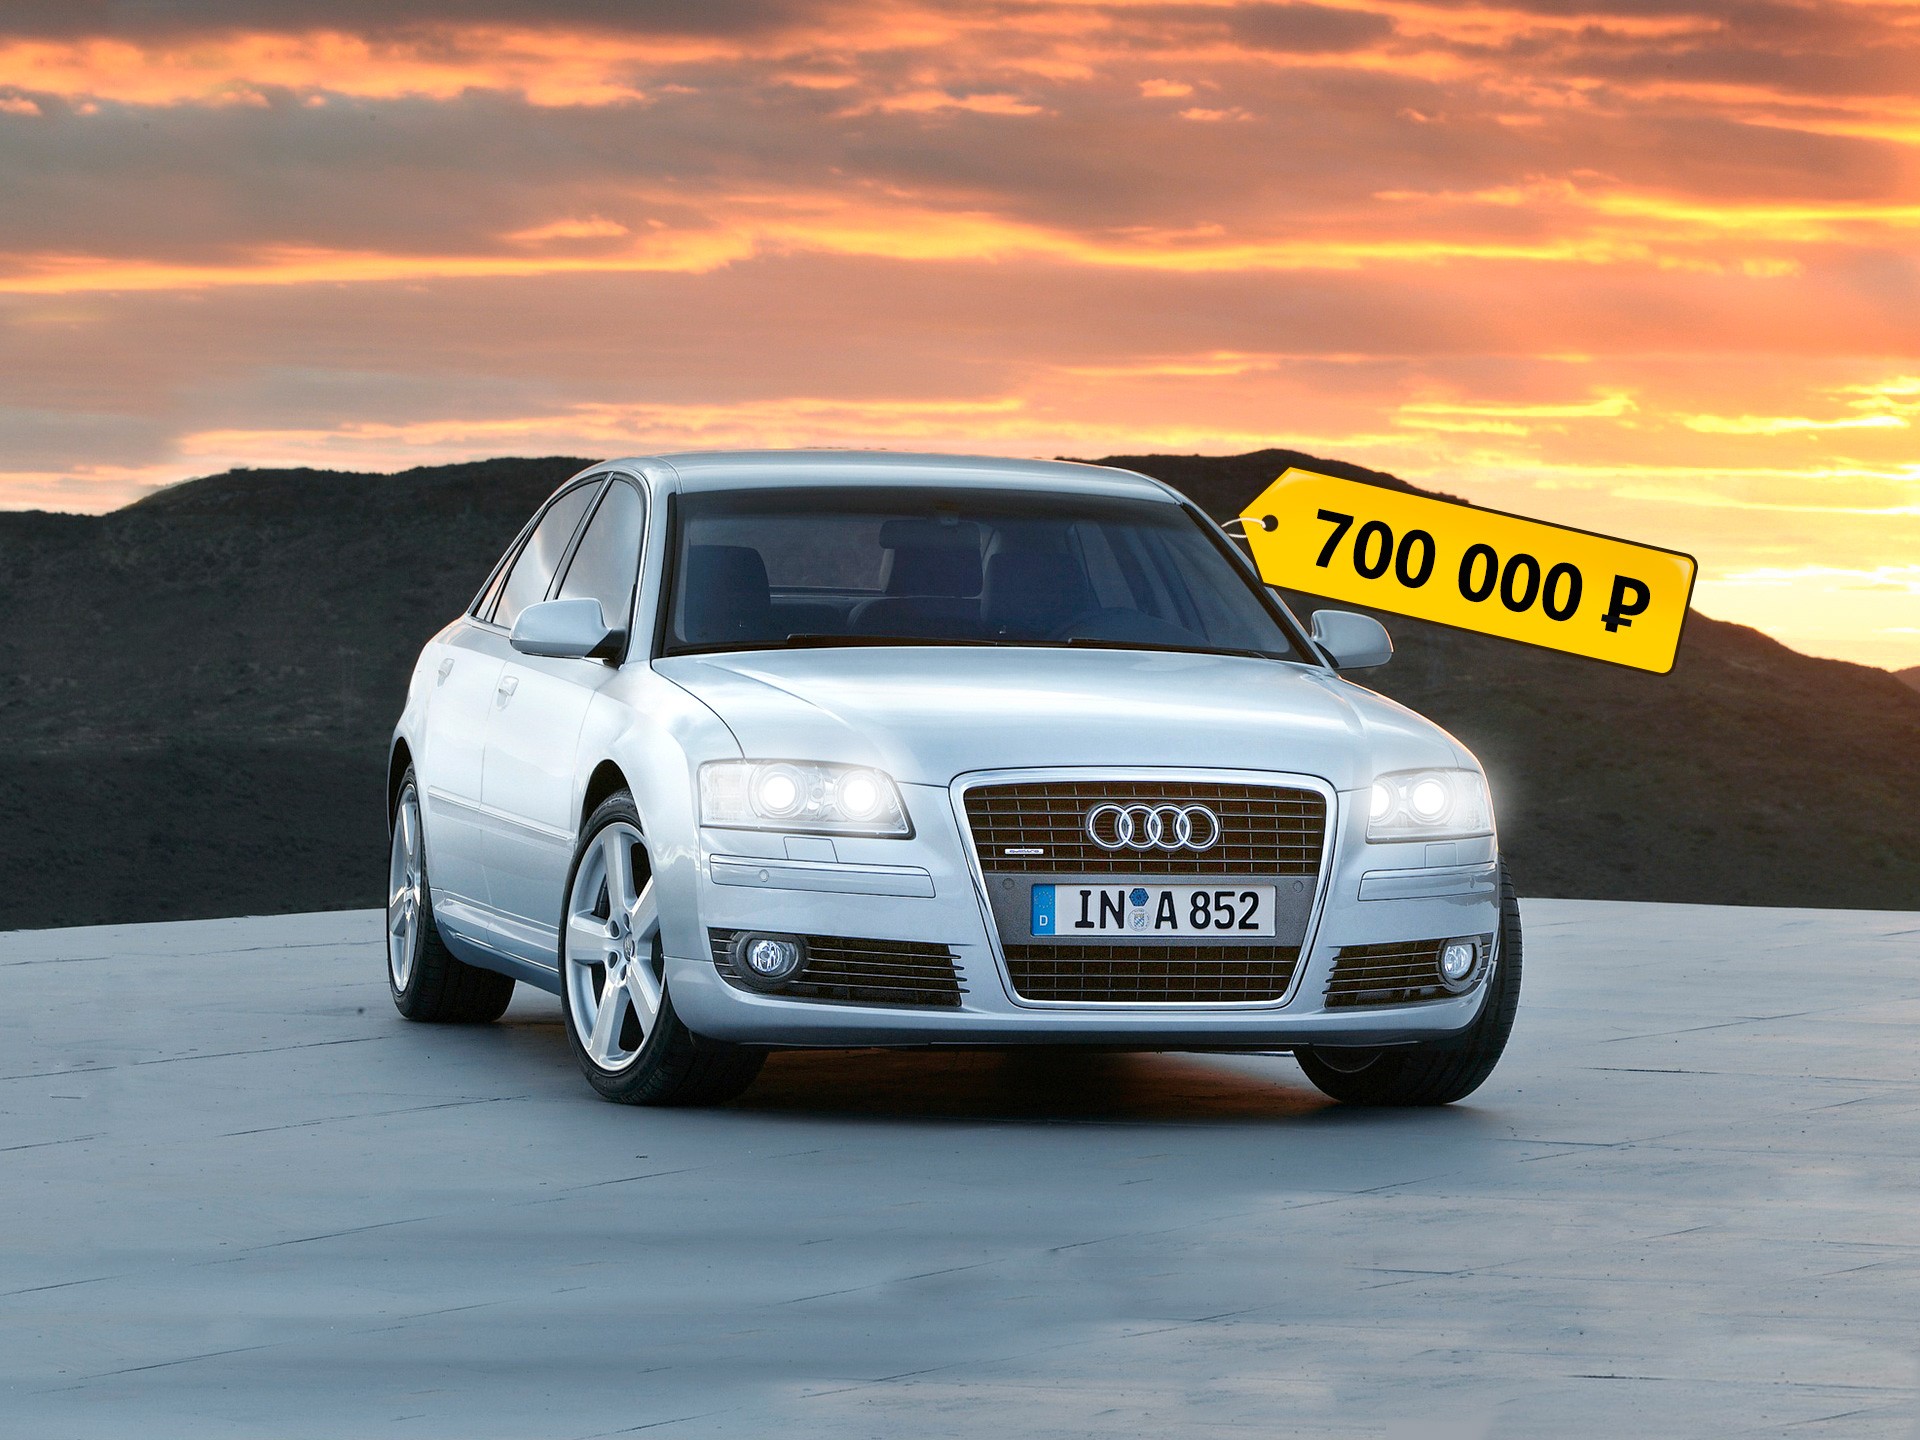 Без ржавчины — еще не значит идеально: стоит ли покупать Audi A8 II за 700 тысяч